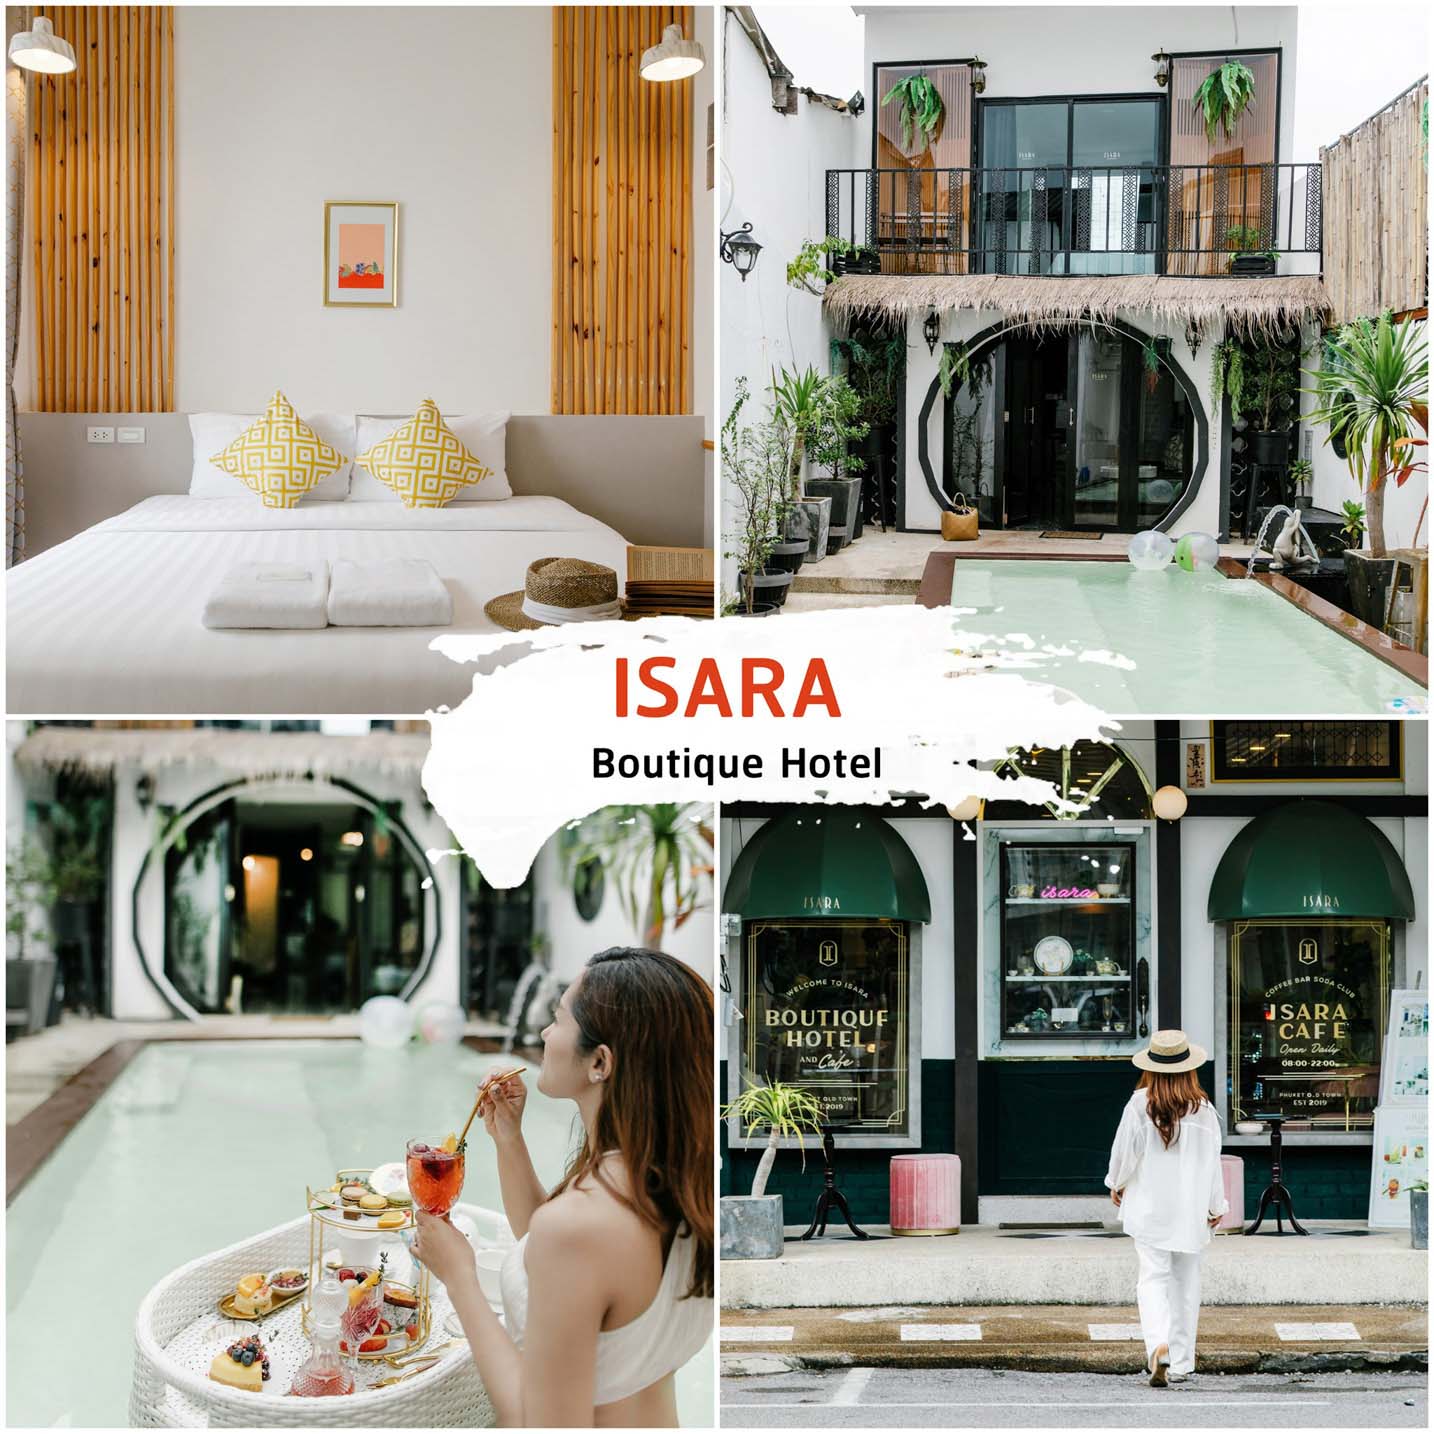 ISARA Hotel and Cafe ที่พักย่านเมืองเก่าภูเก็ต ตึกชิโนโปรตุกีส ใจกลางเมืองสุดสวย